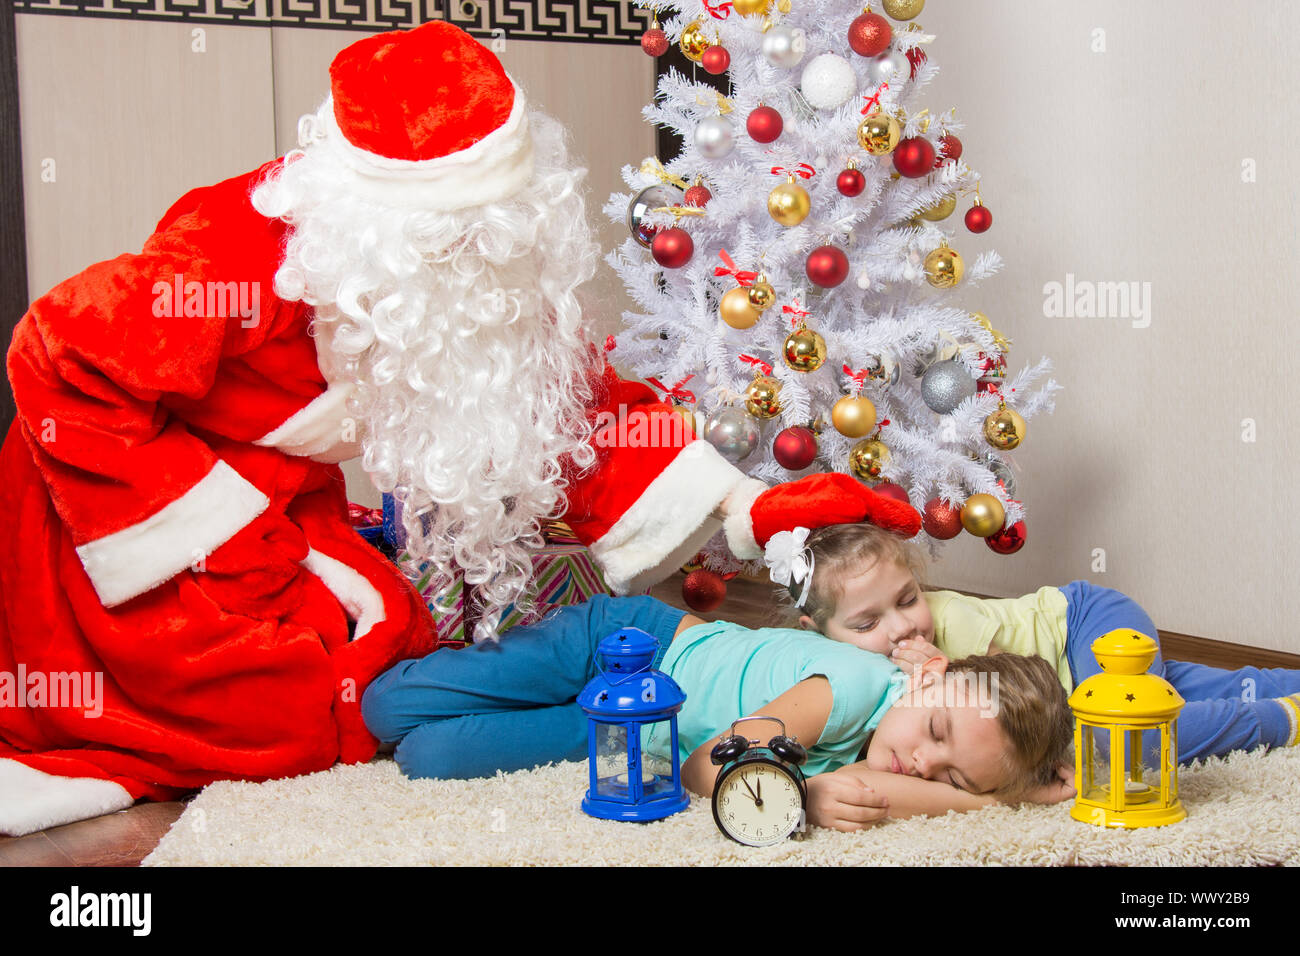 Babbo Natale ha portato regali e da un colpetto sulla testa di dormire i bambini Foto Stock